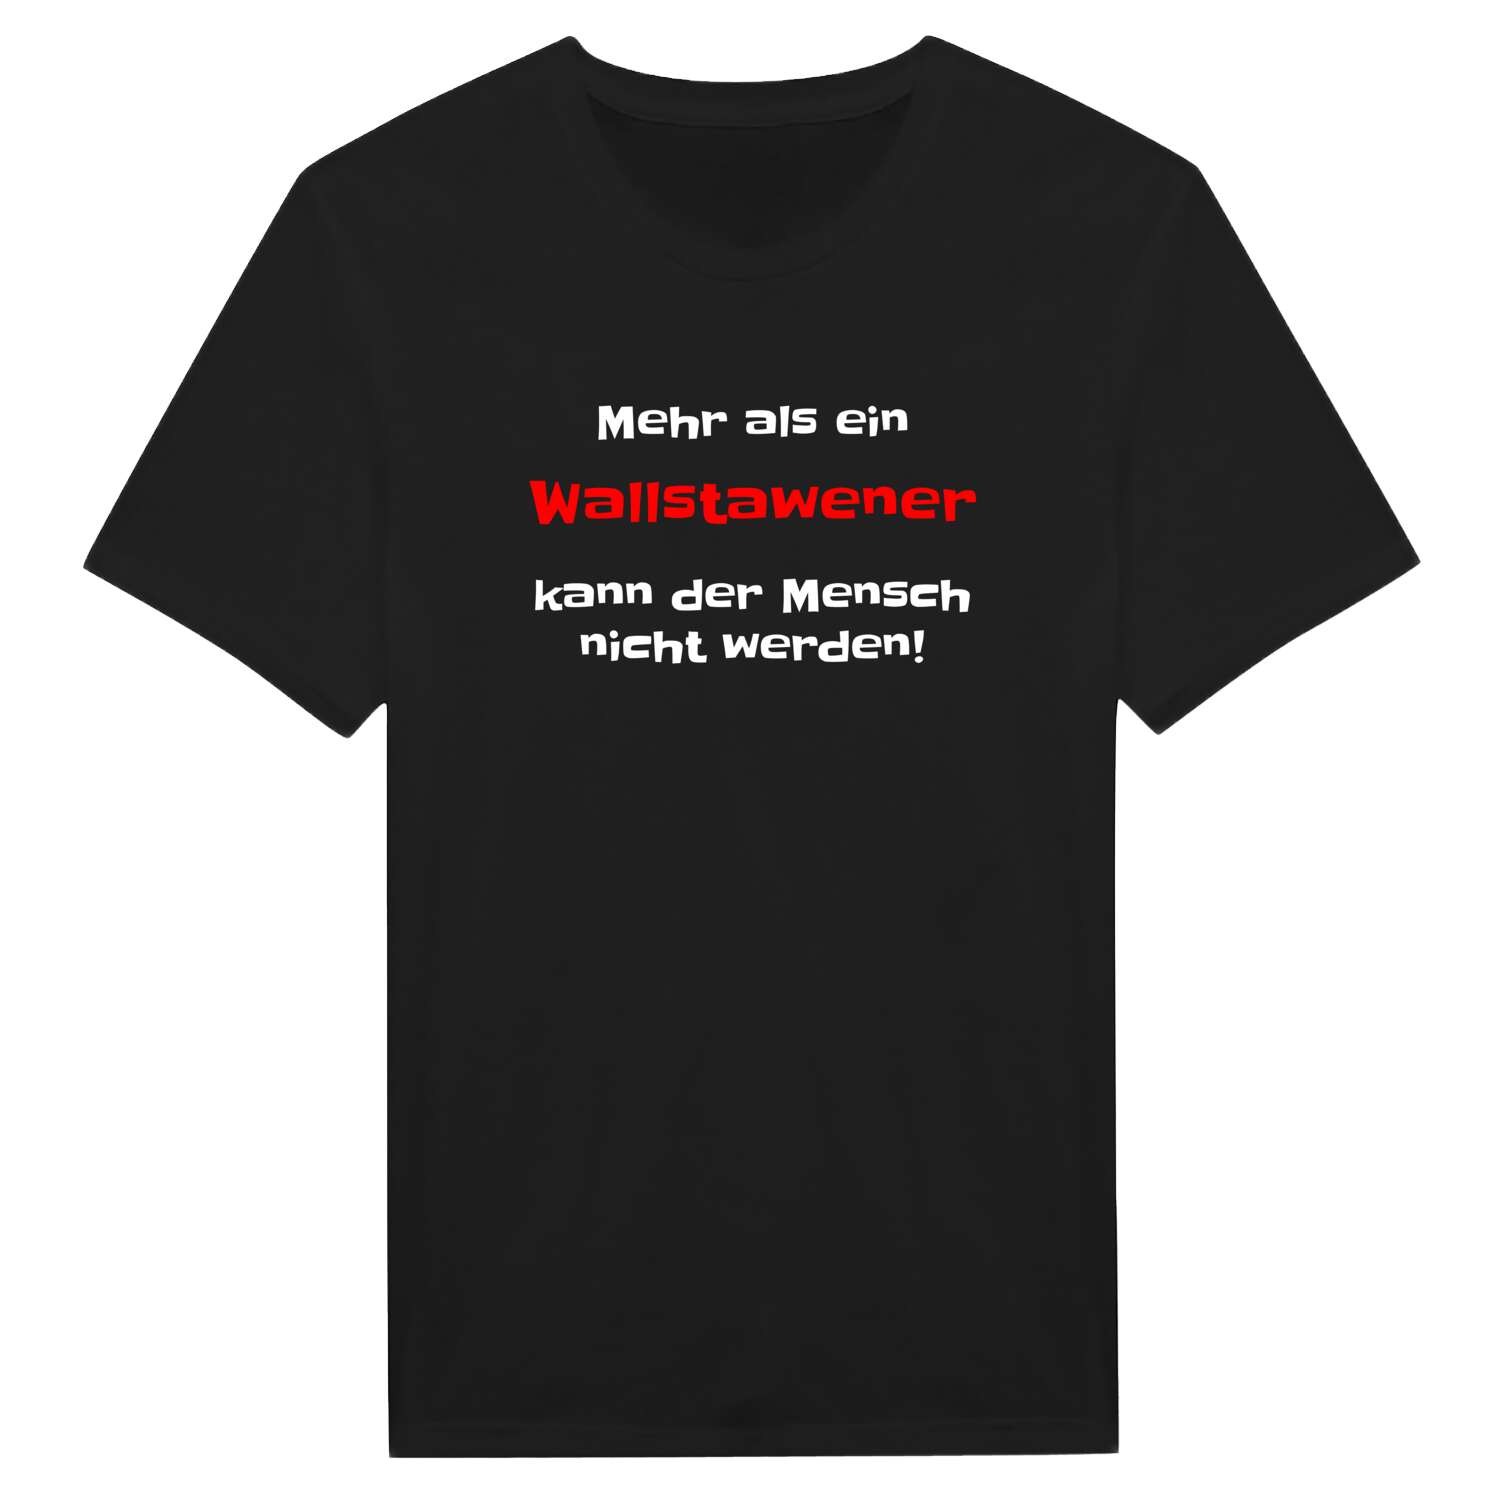 Wallstawe T-Shirt »Mehr als ein«